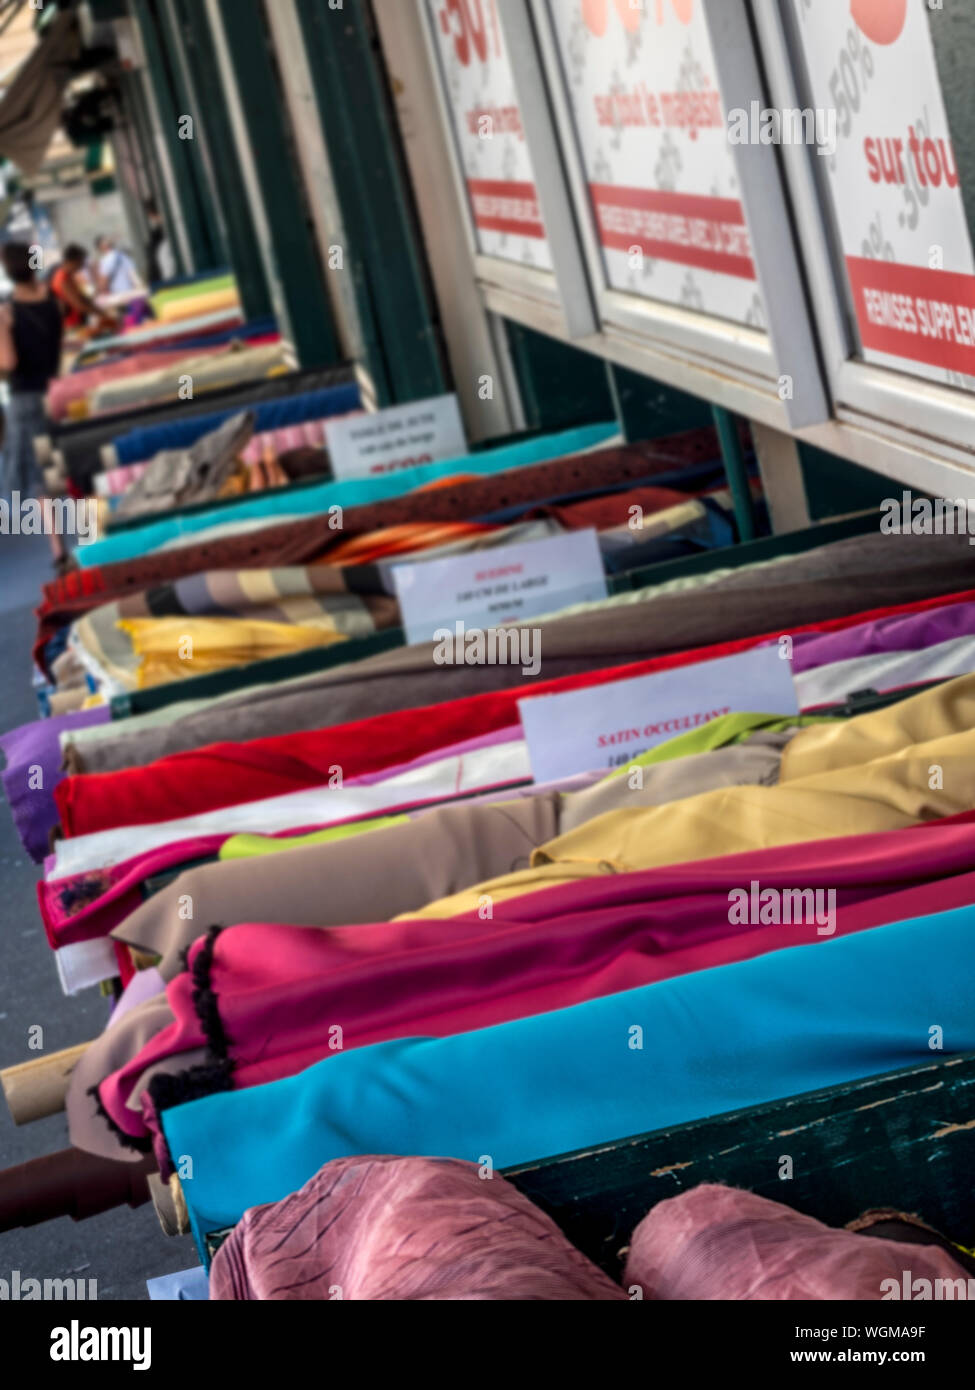 PARIS, FRANCE - 04 AOÛT 2018 : rouleaux de tissus colorés à l'extérieur d'une boutique de mercerie sur la place Saint Pierre - le quartier des tissus Banque D'Images